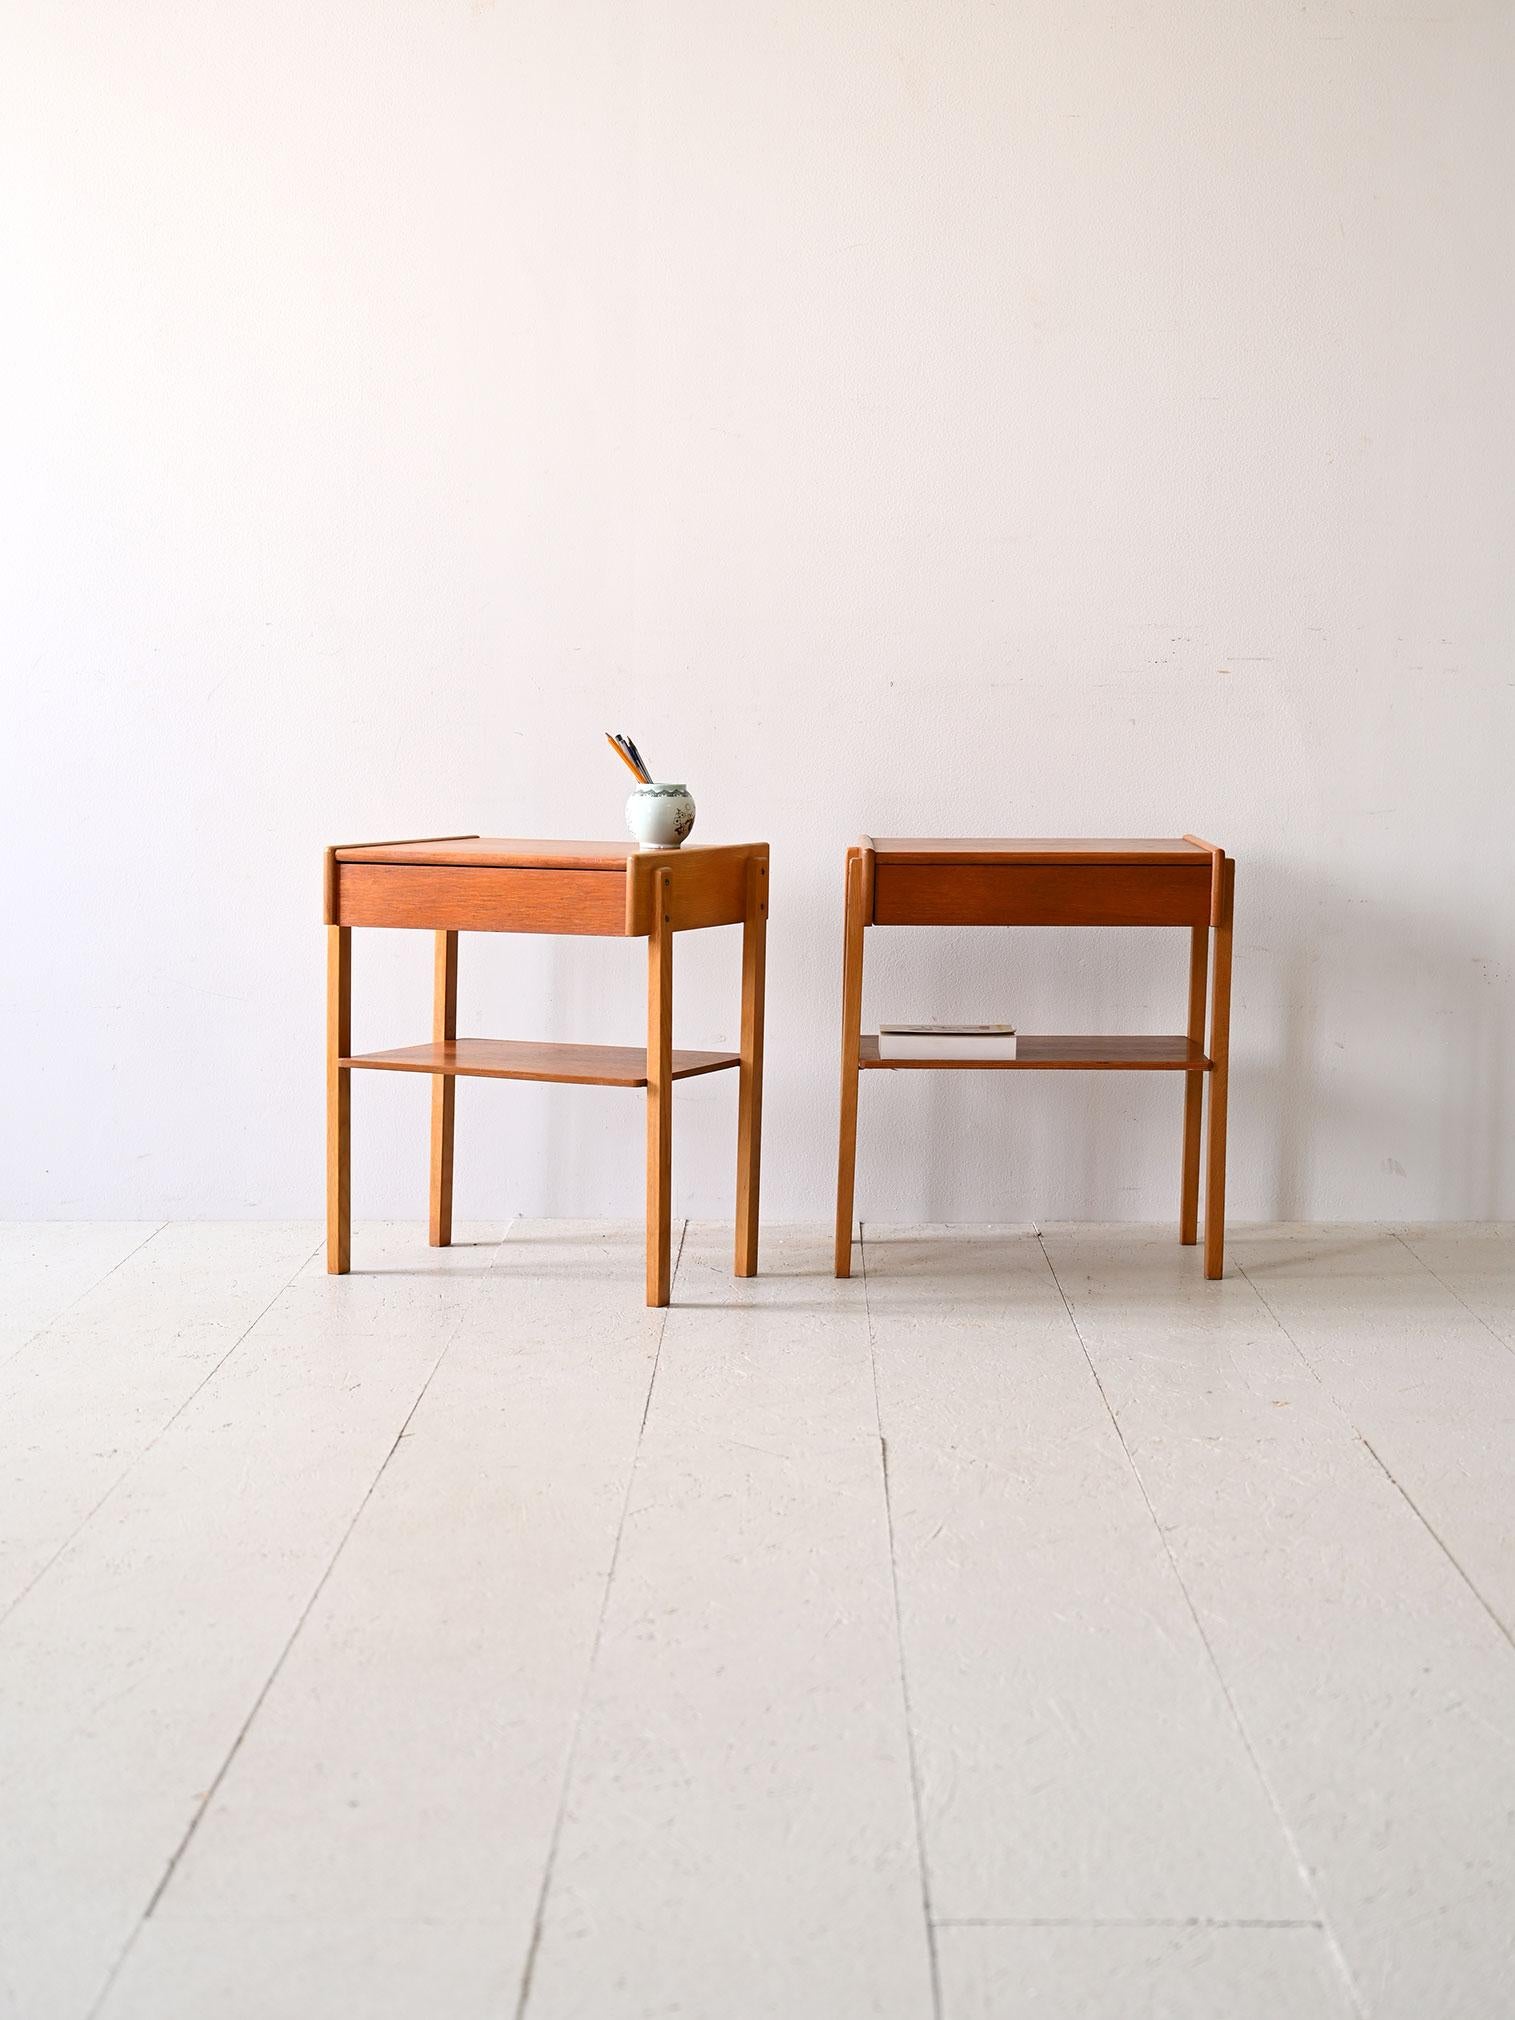 Zwei originale skandinavische Nachttische aus den 1960er Jahren.

Dieses schwedische Nachttischpaar aus den 1960er Jahren zeichnet sich durch sein minimalistisches skandinavisches Design aus, das sich durch klare, einfache Linien auszeichnet. Die